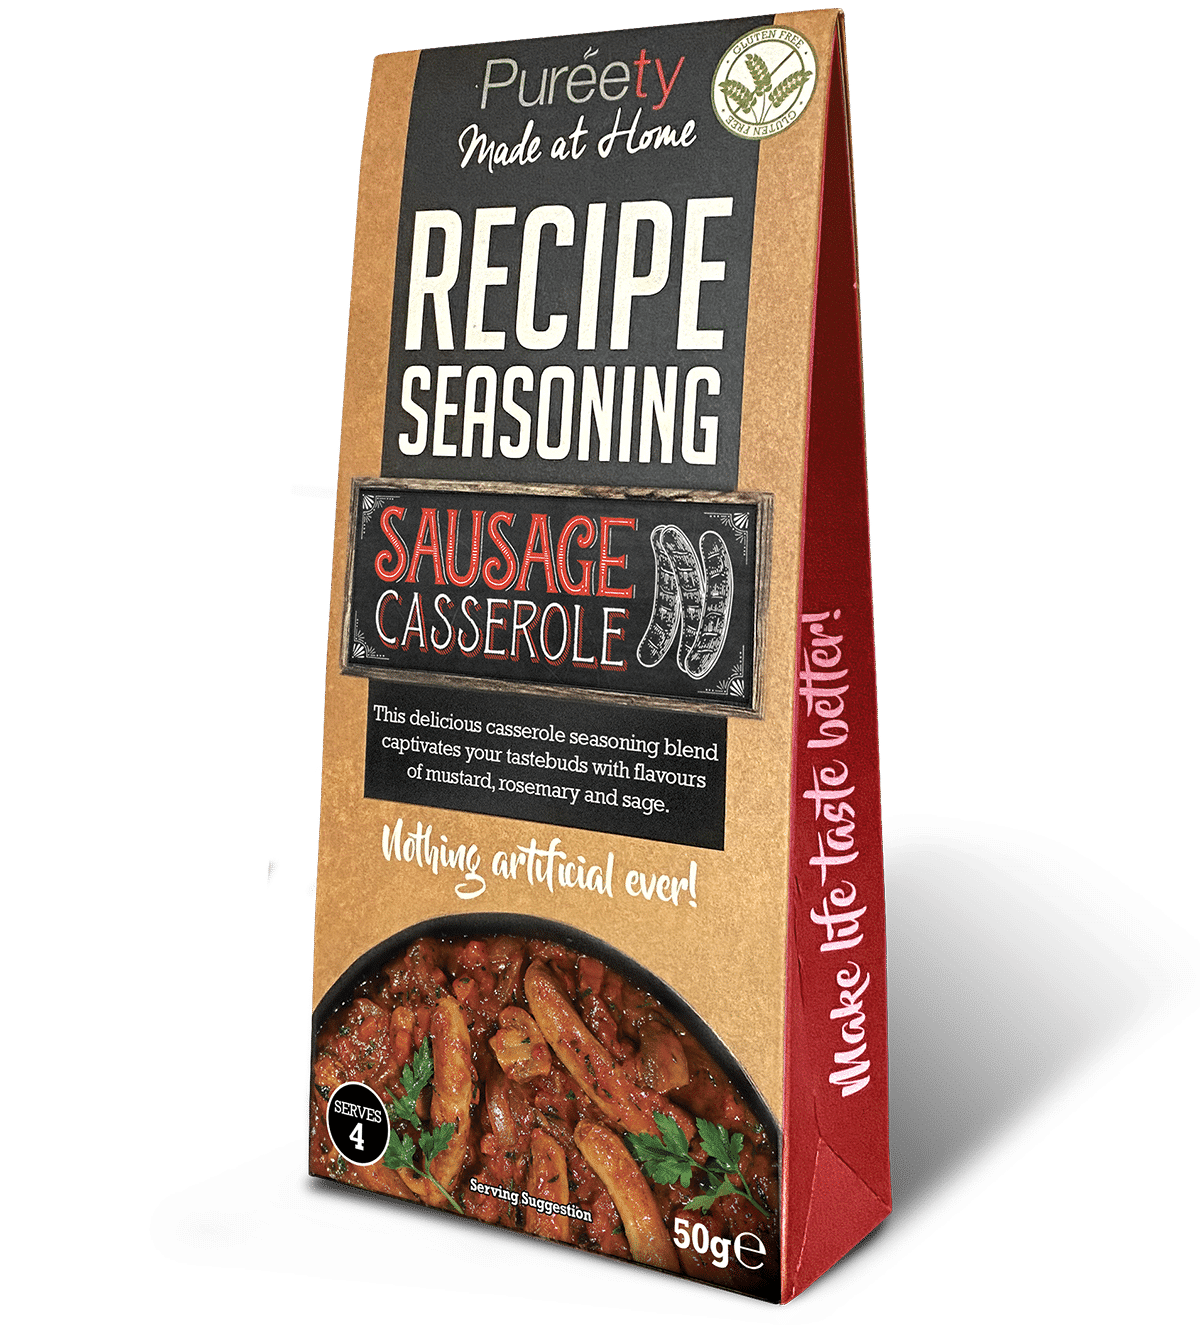 Sausage Casserole Recipe Seasoning